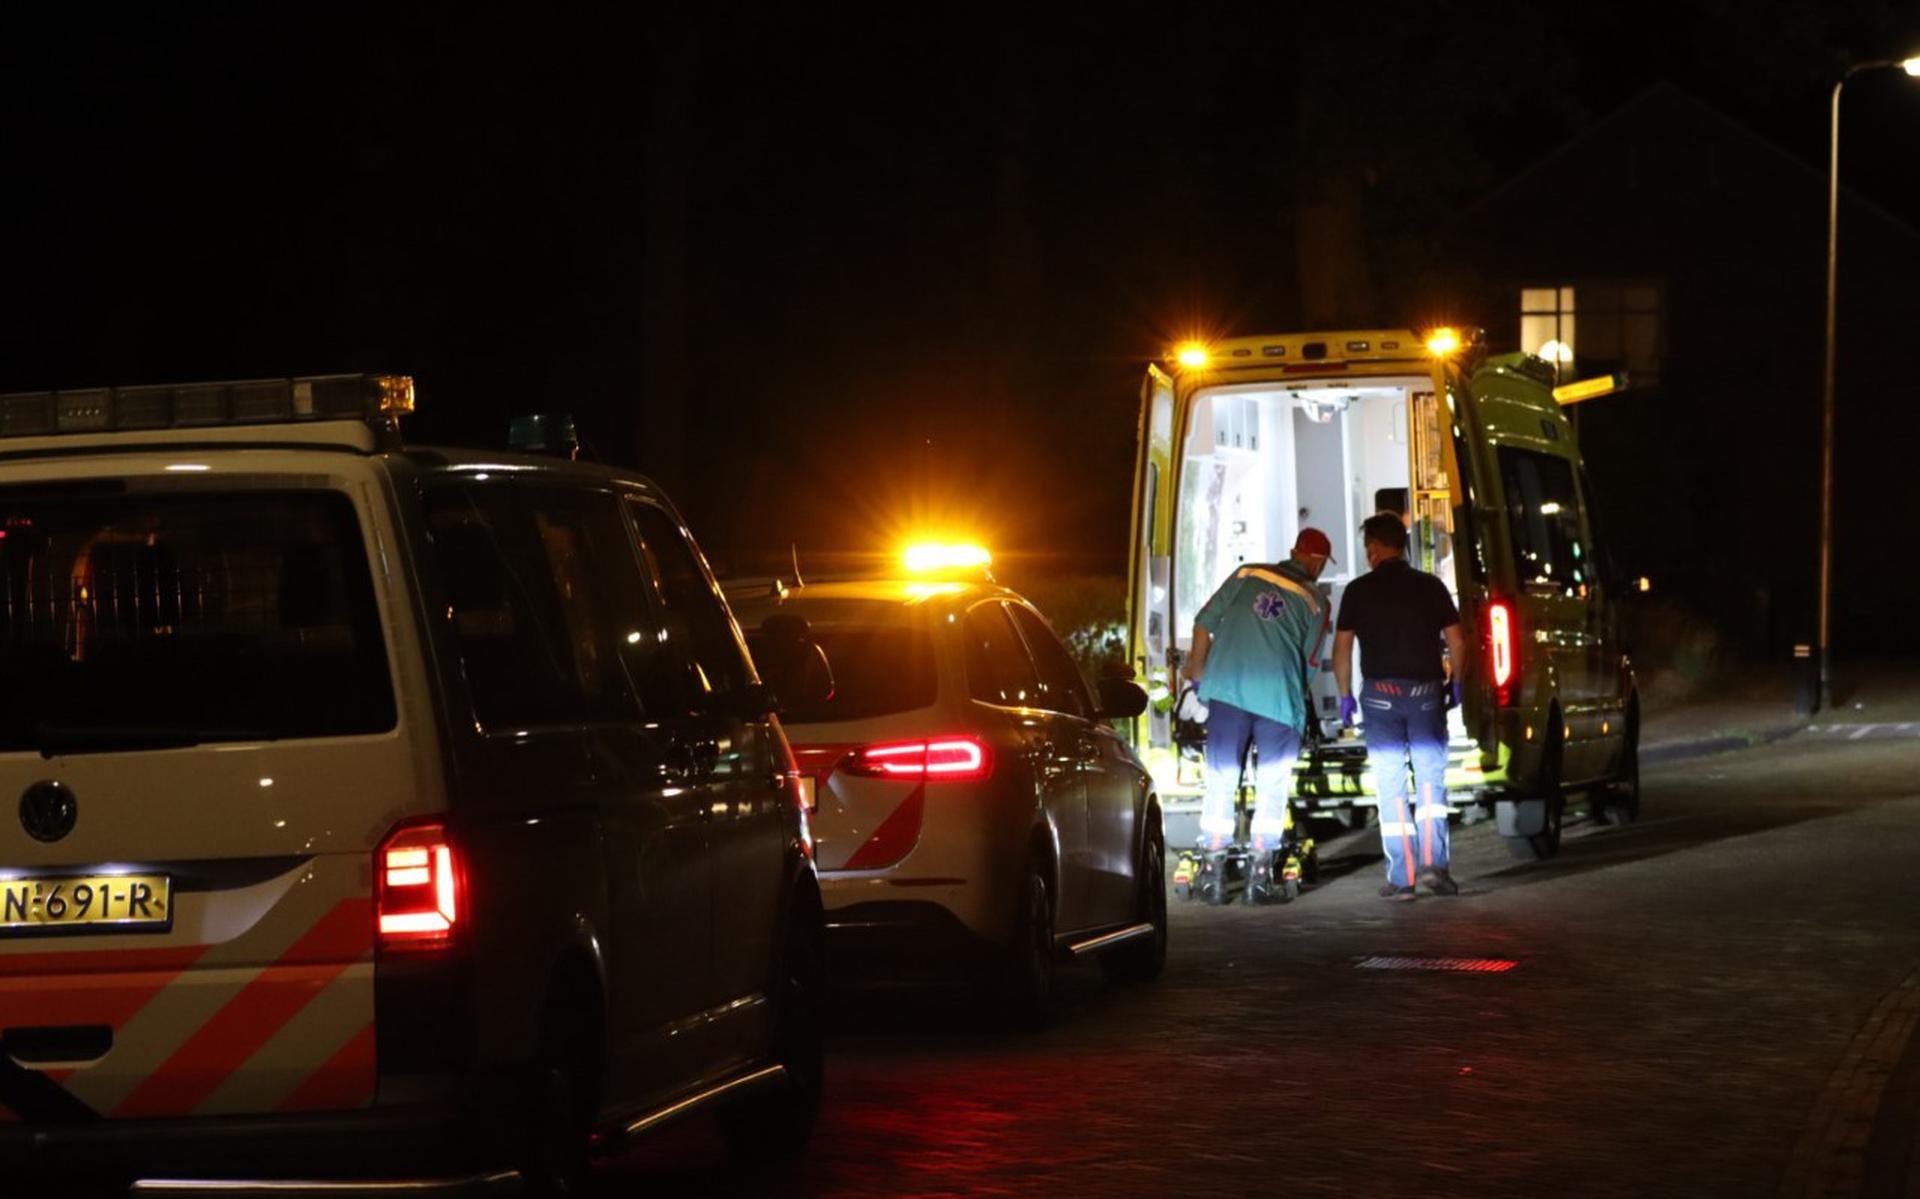 De vrouw die in Steenwijkerwold met haar hoofd op de stoep tericht kwam toen ze met haar fiets viel, is met de ambulance naar het ziekenhuis gebracht.